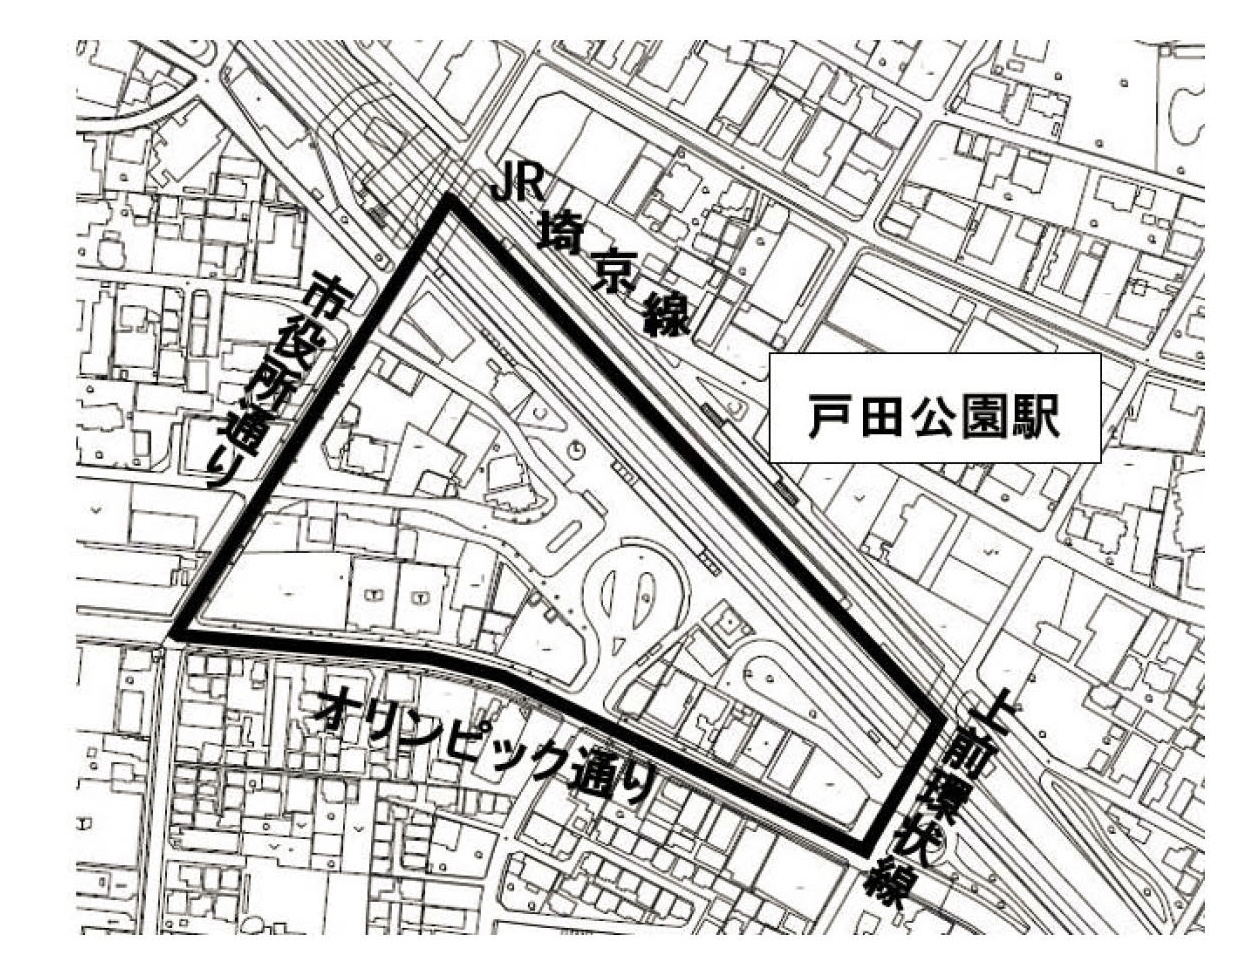 戸田公園駅西口駅前地区の区域図